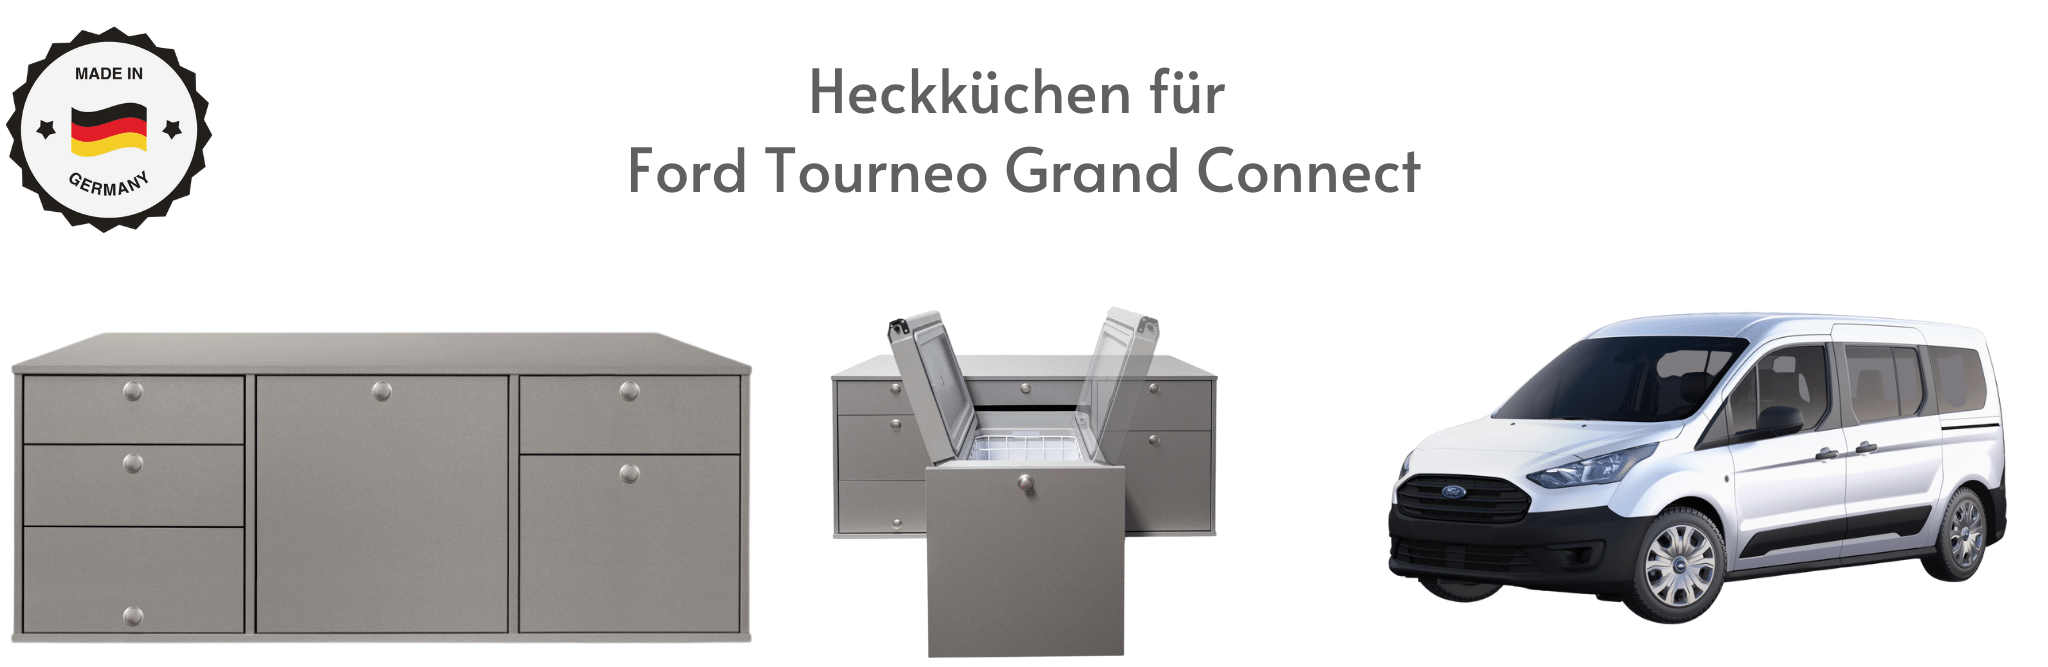 Heckküchen für Ford Tourneo Grand Connect